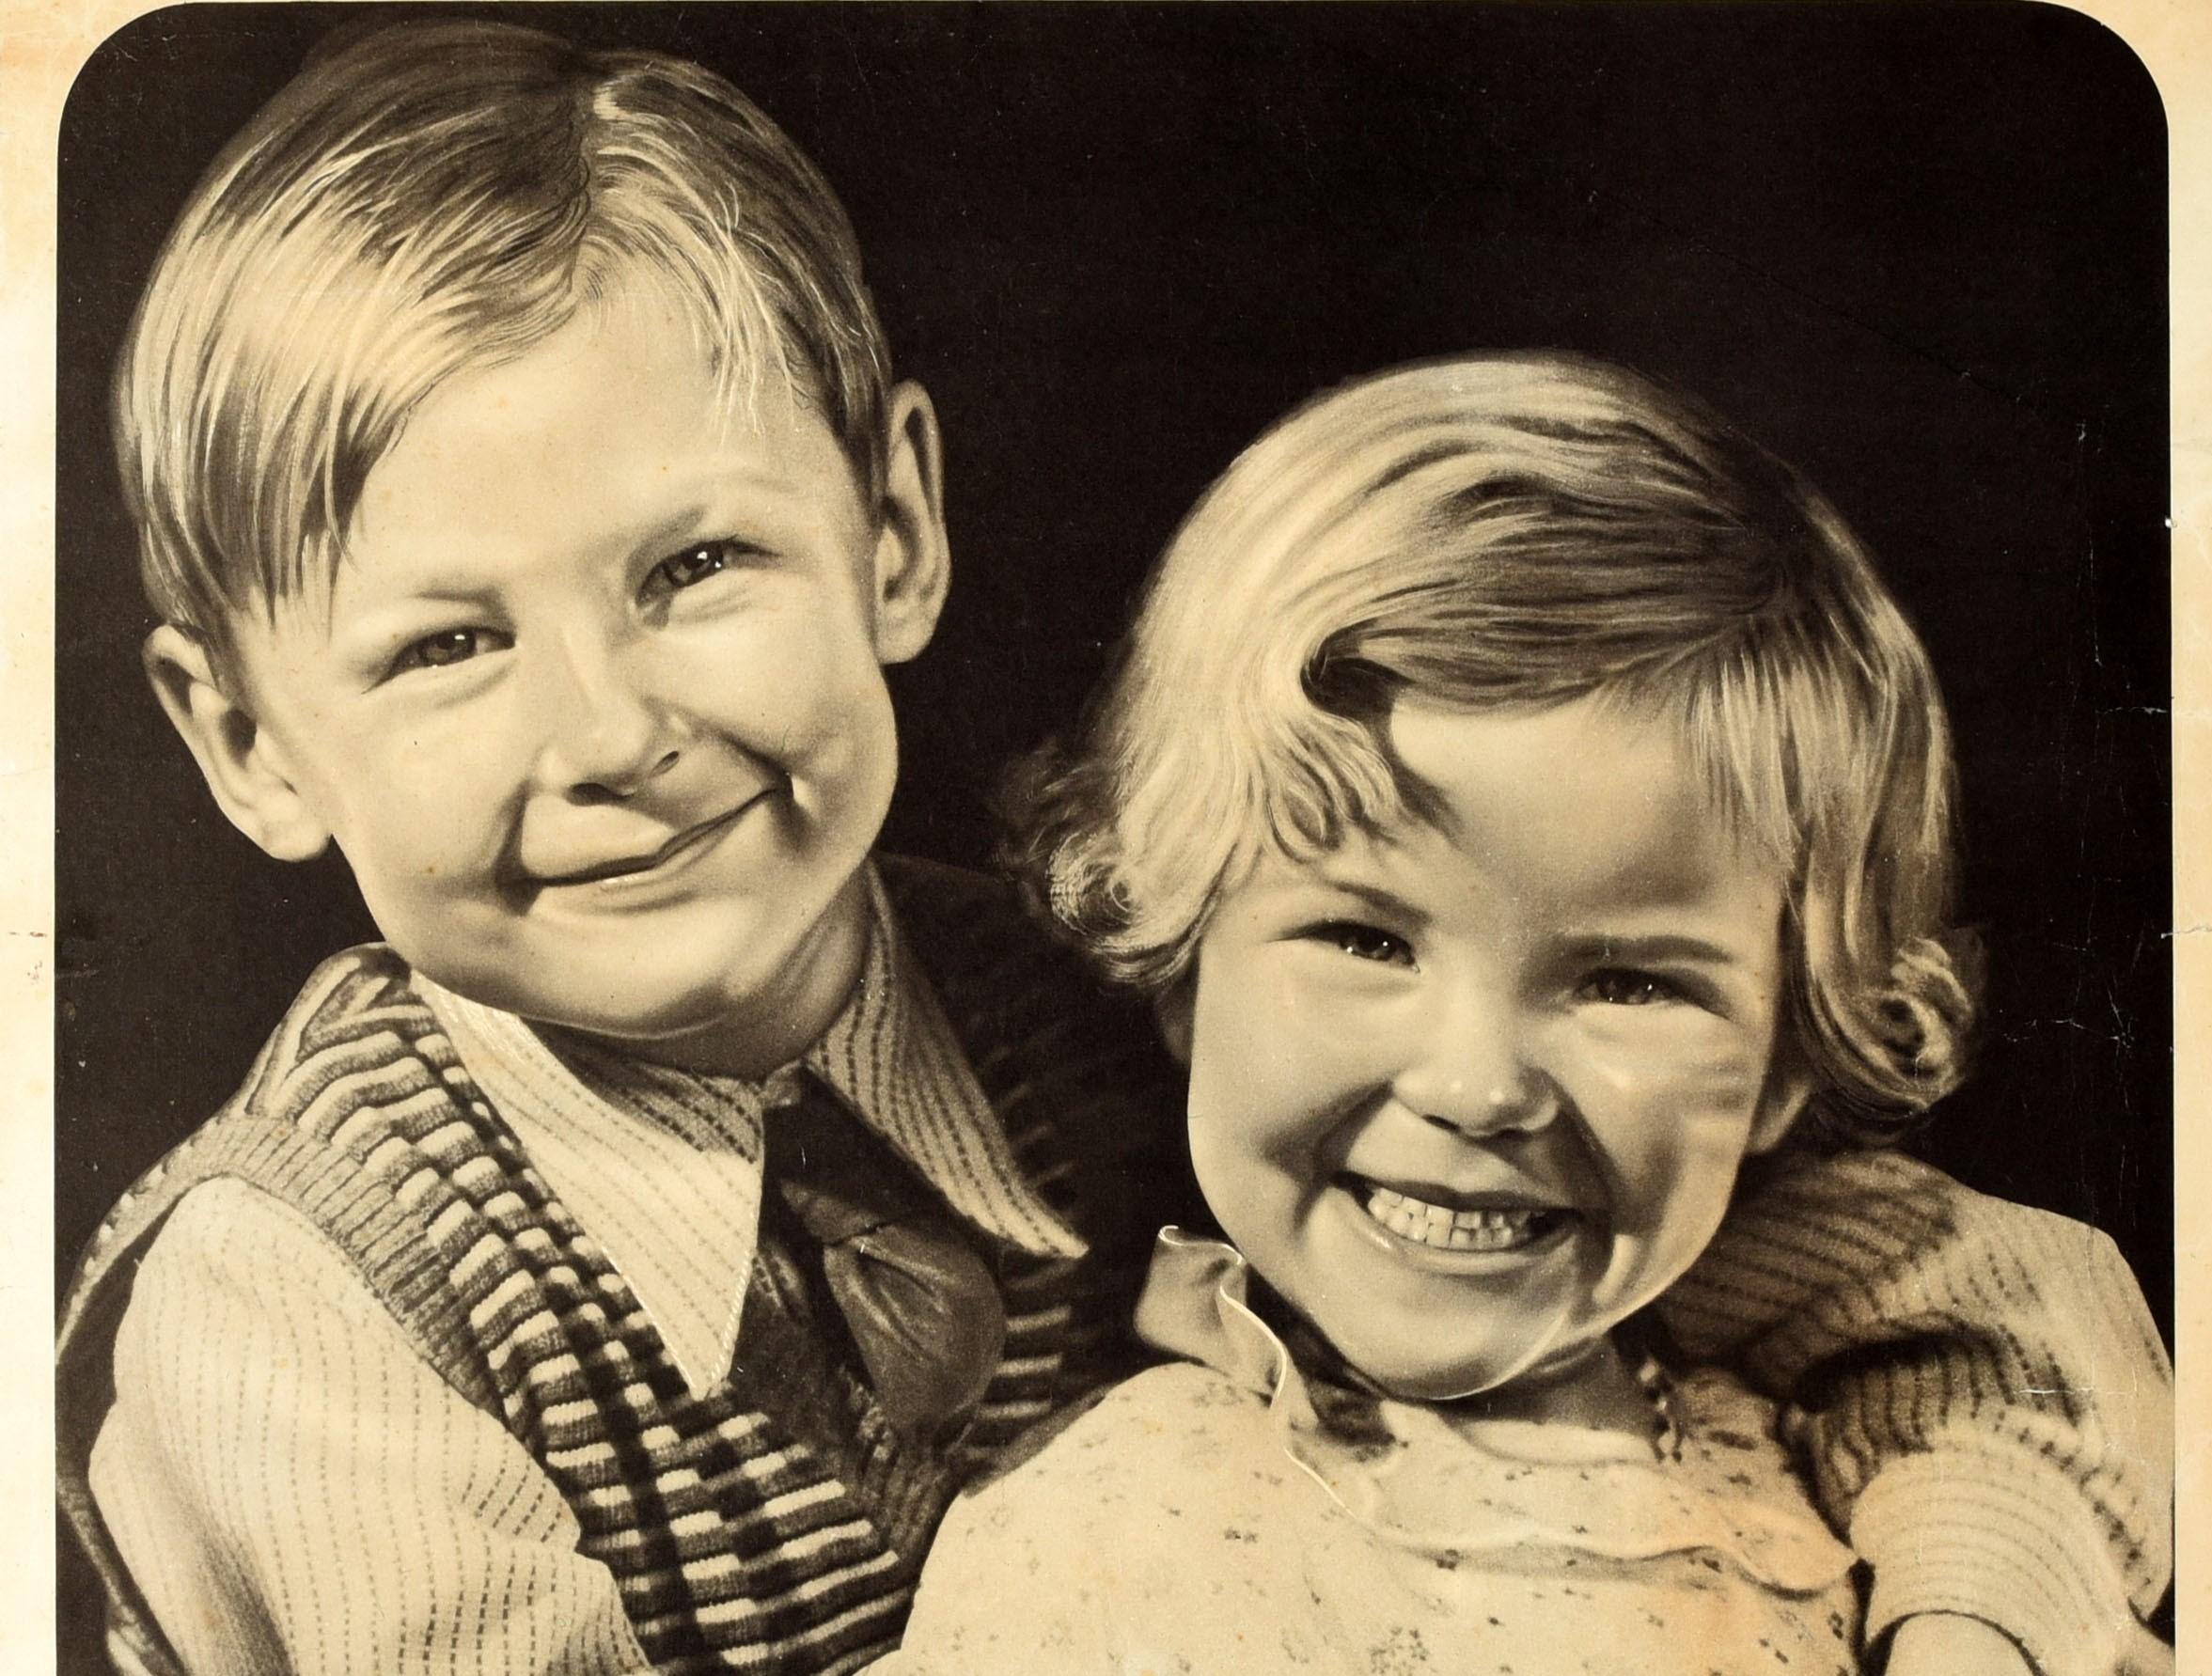 Originales britisches Propagandaplakat aus dem Zweiten Weltkrieg - Kinder sind auf dem Land sicherer ... lasst sie dort - mit einem Schwarz-Weiß-Bild zweier junger, gesunder und lächelnder Kinder, wobei der Junge den Arm um ein Mädchen legt und der